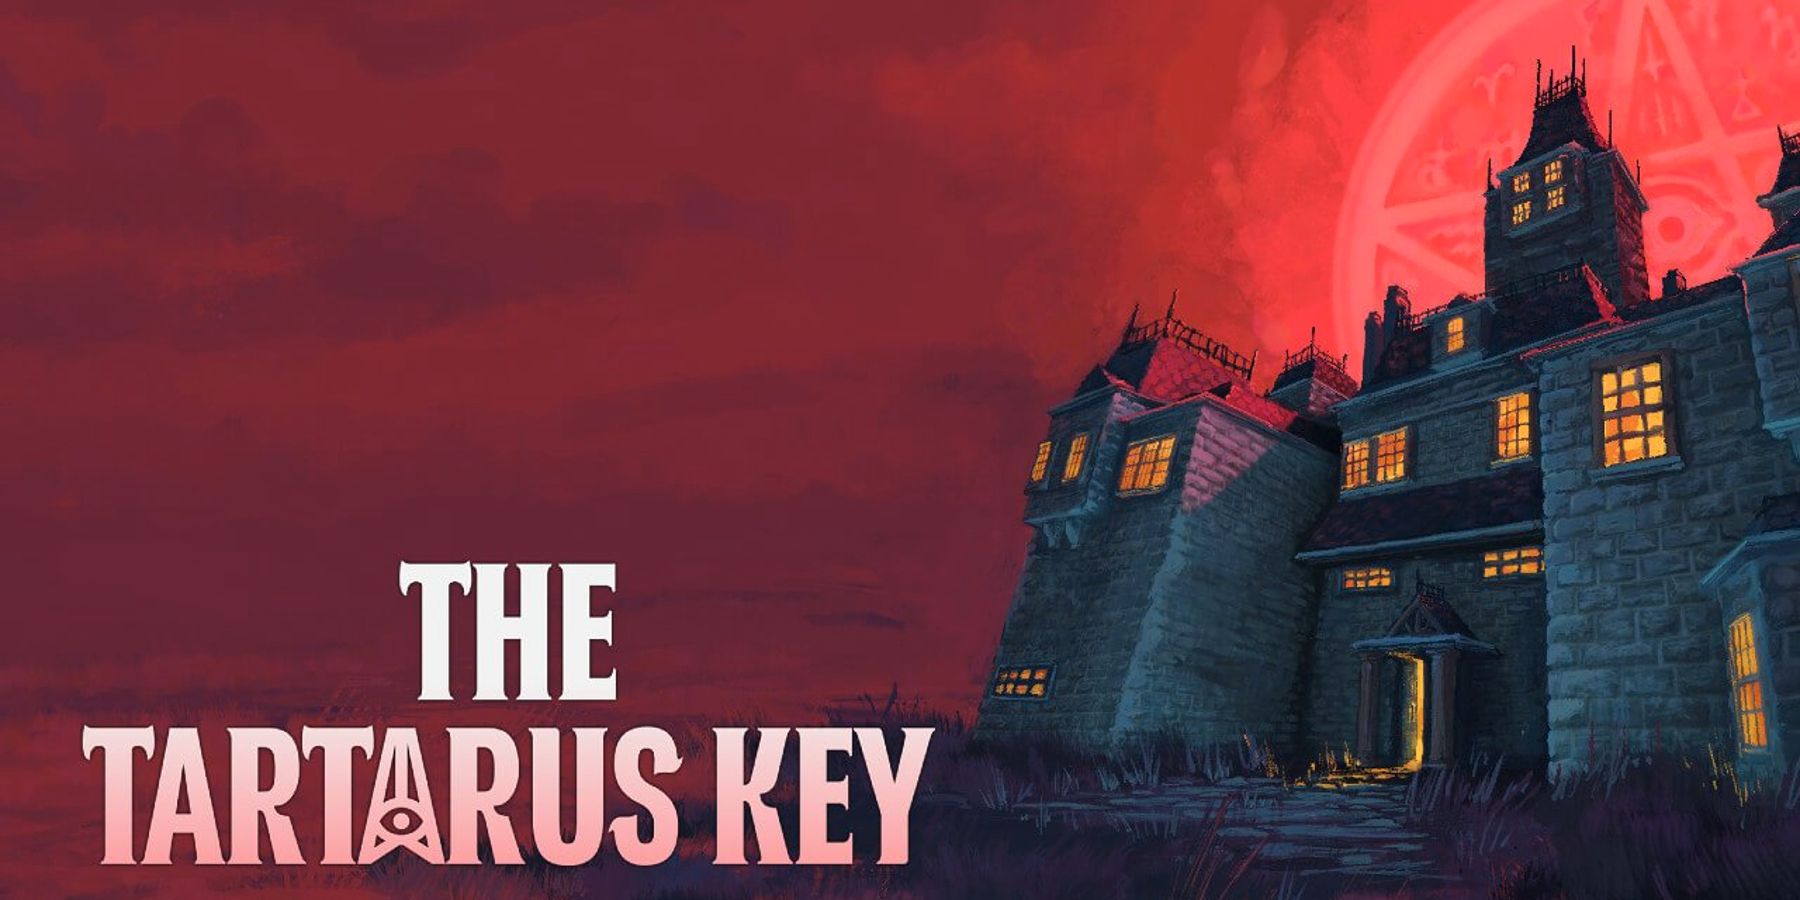 Horrorgame in PS1-stijl The Tartarus Key aangekondigd voor Nintendo Switch